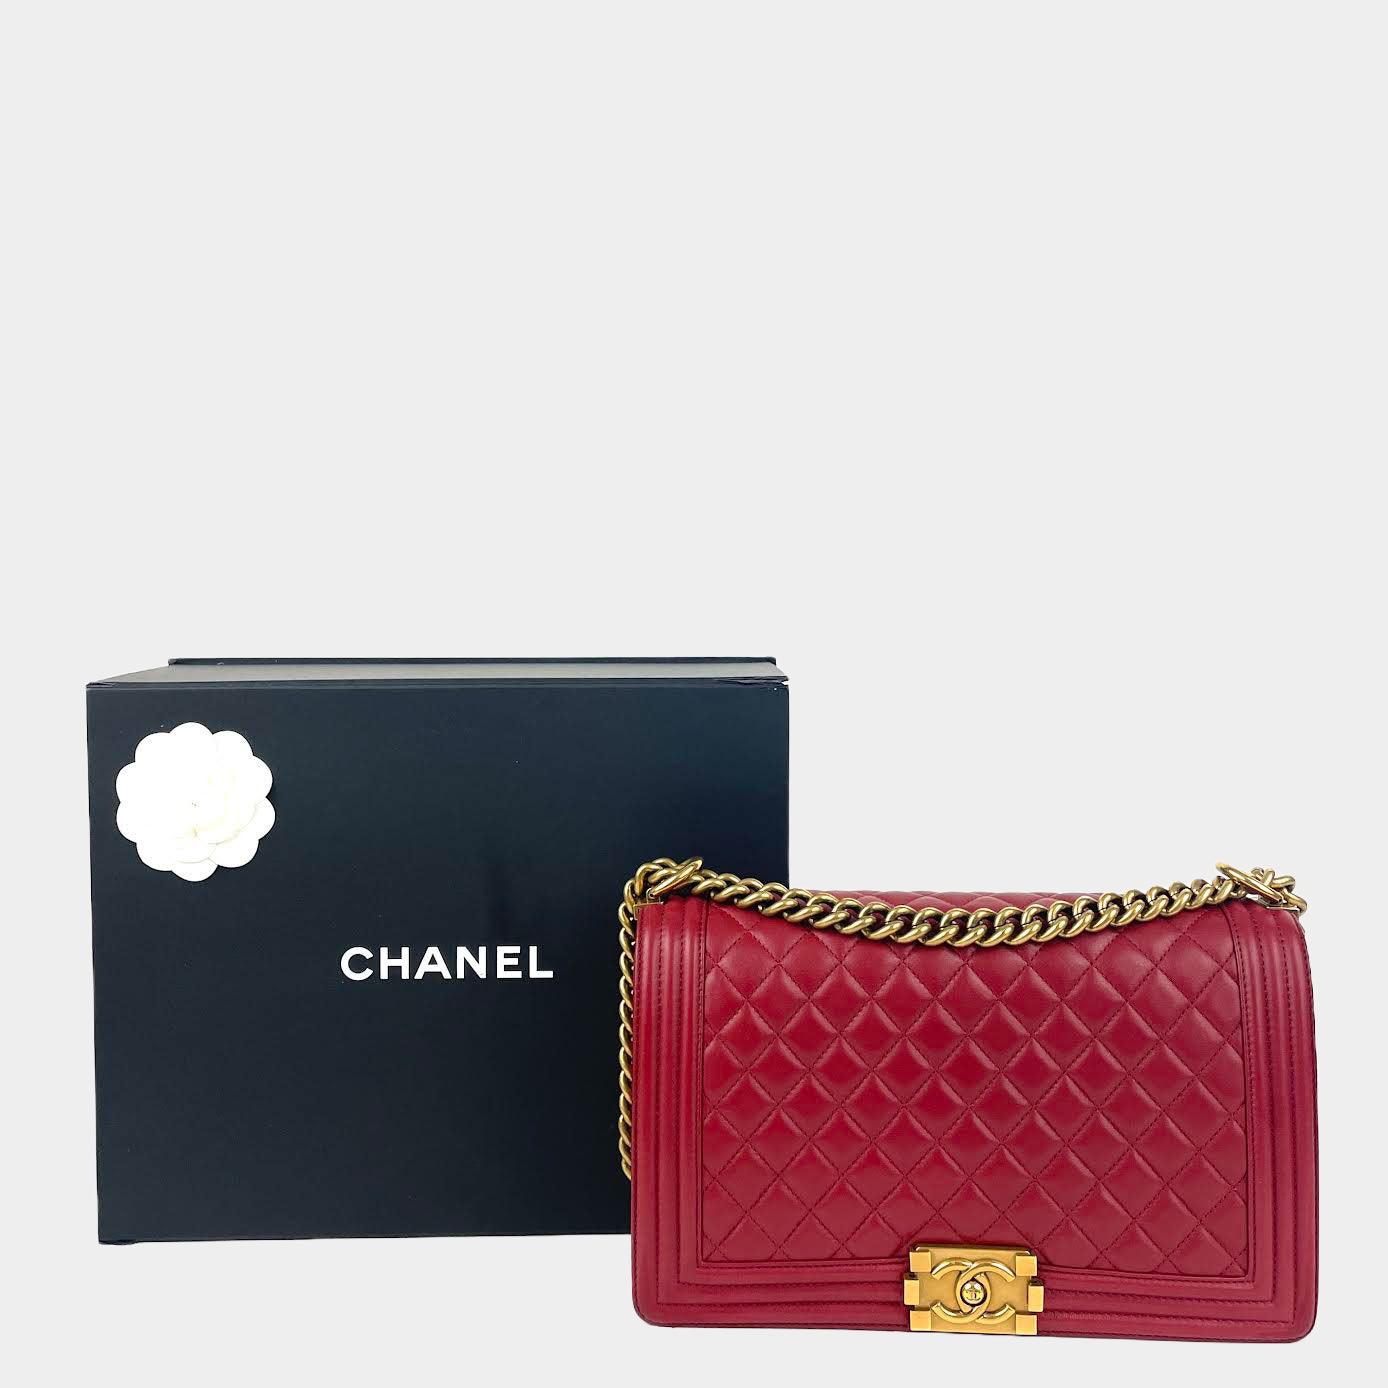 Chanel New Medium Boy Bag - Burgundy